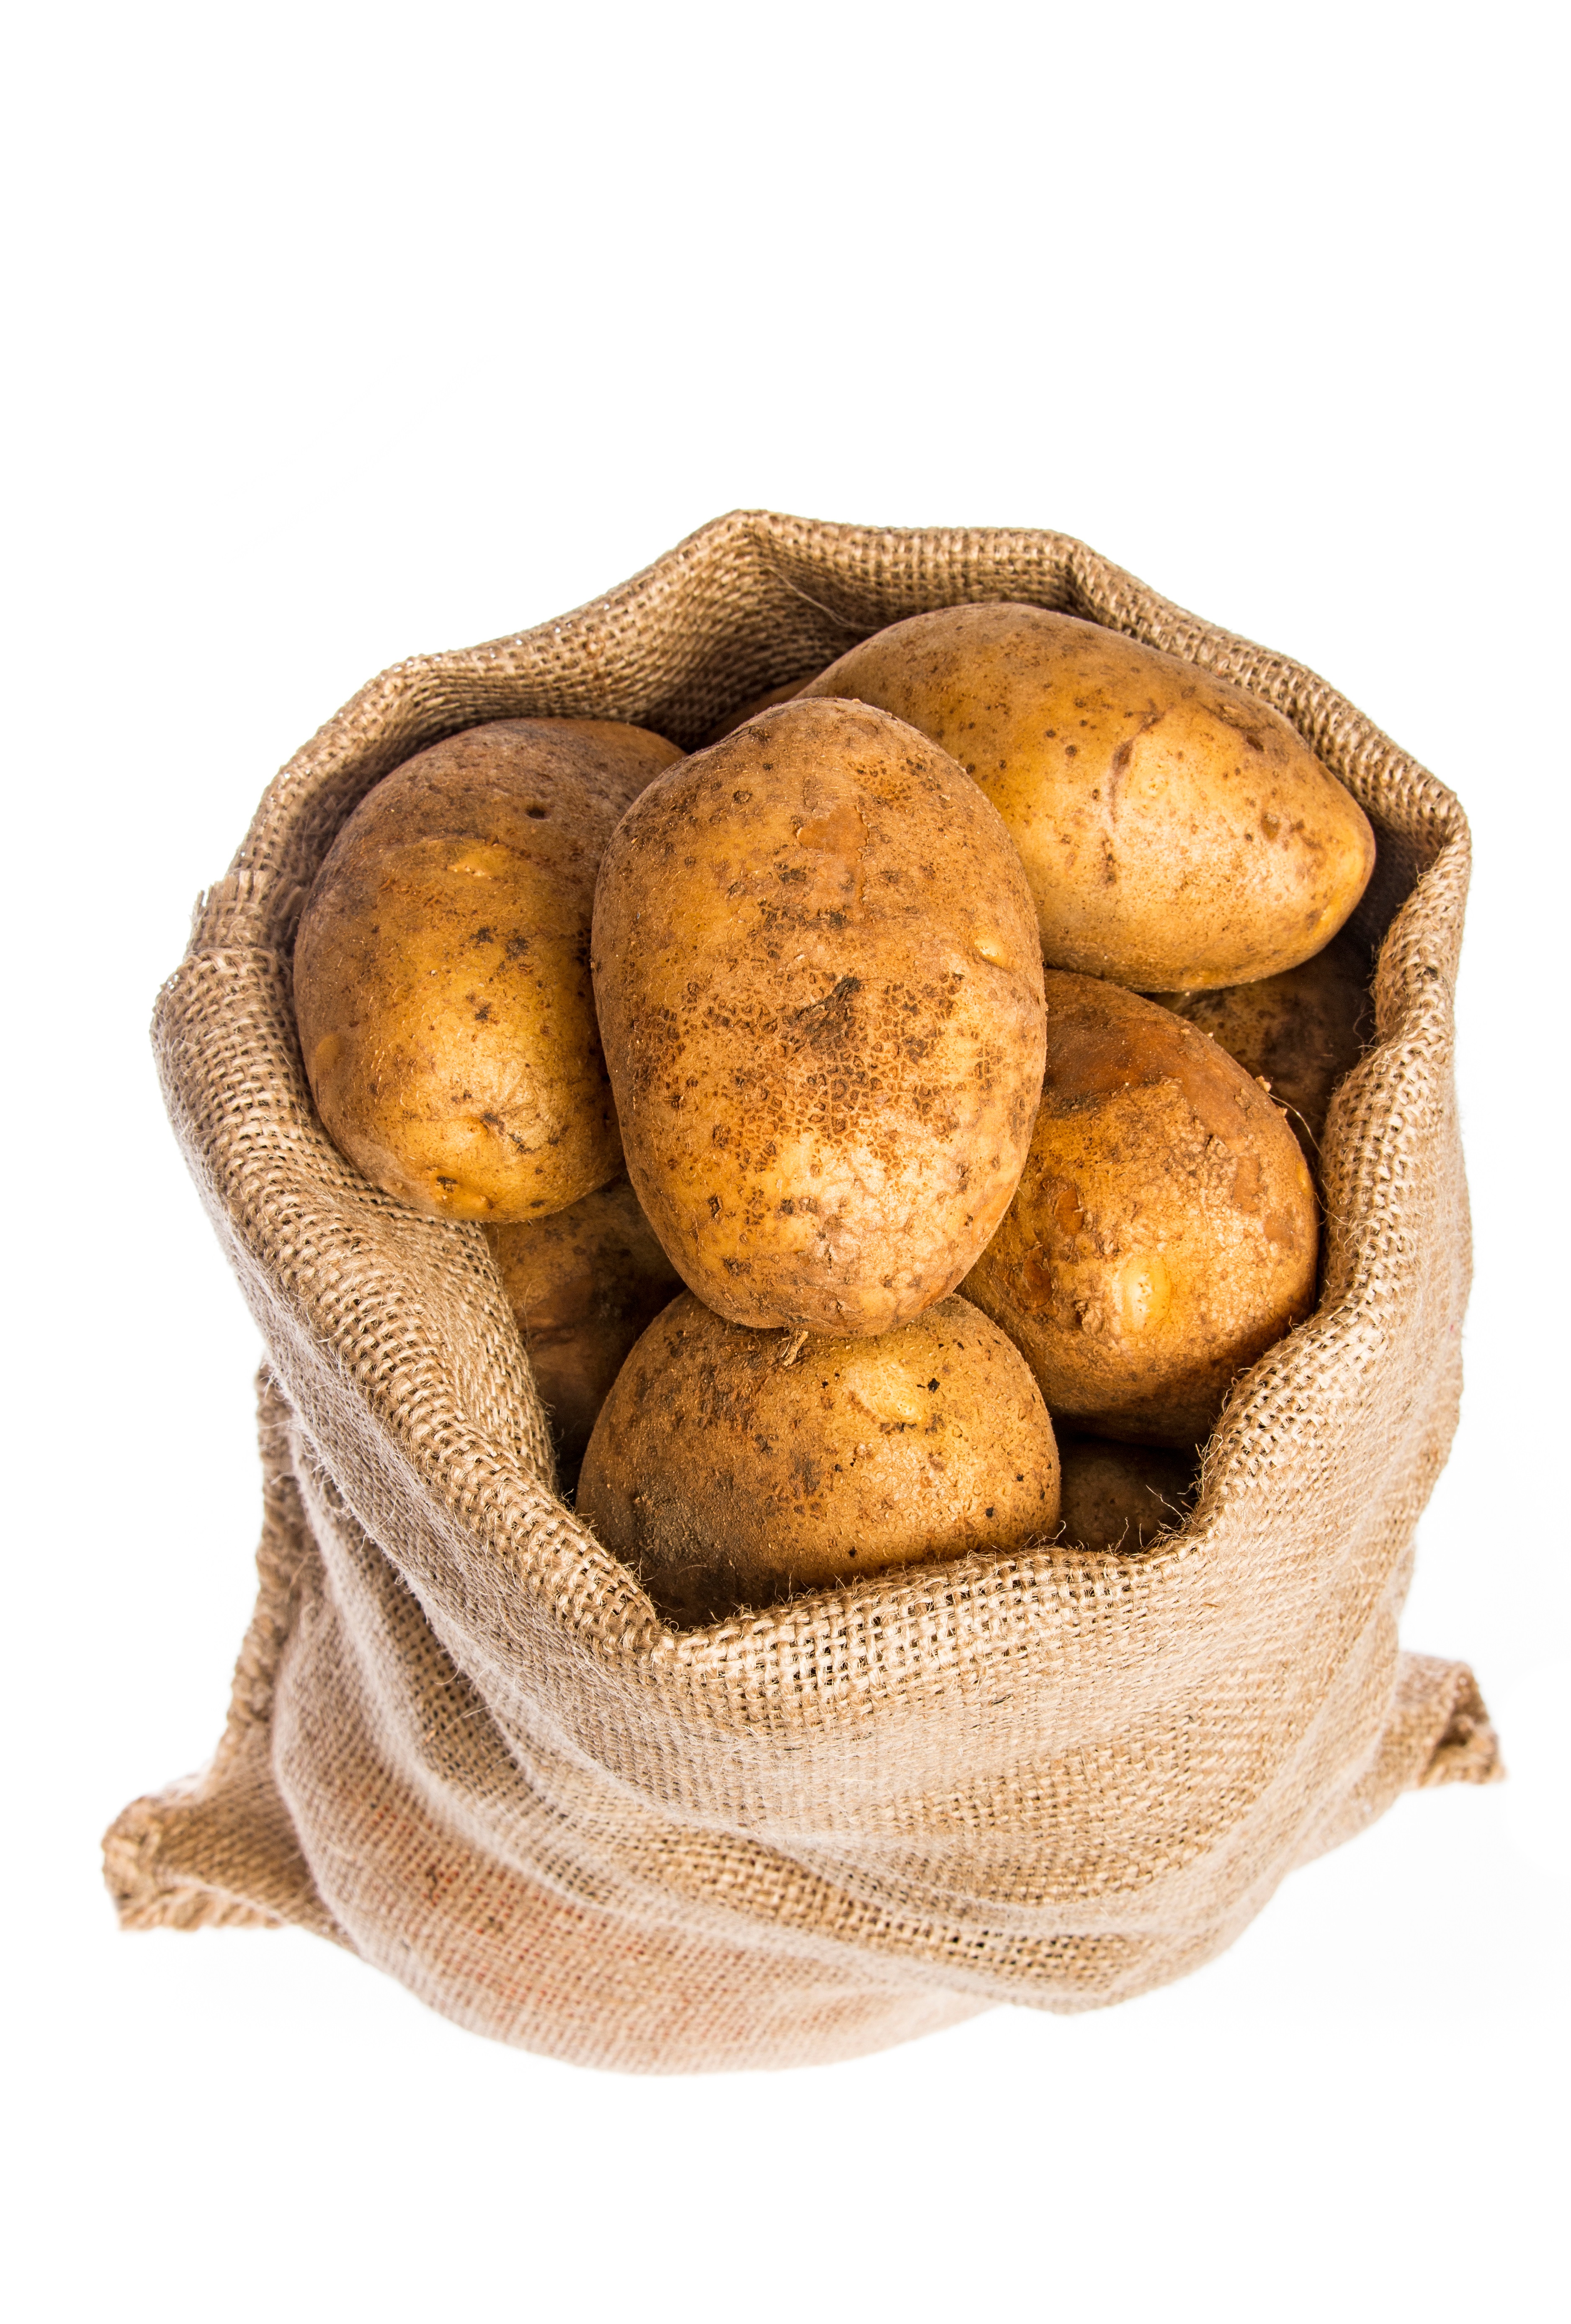 Friet aardappelen (Huismerk)